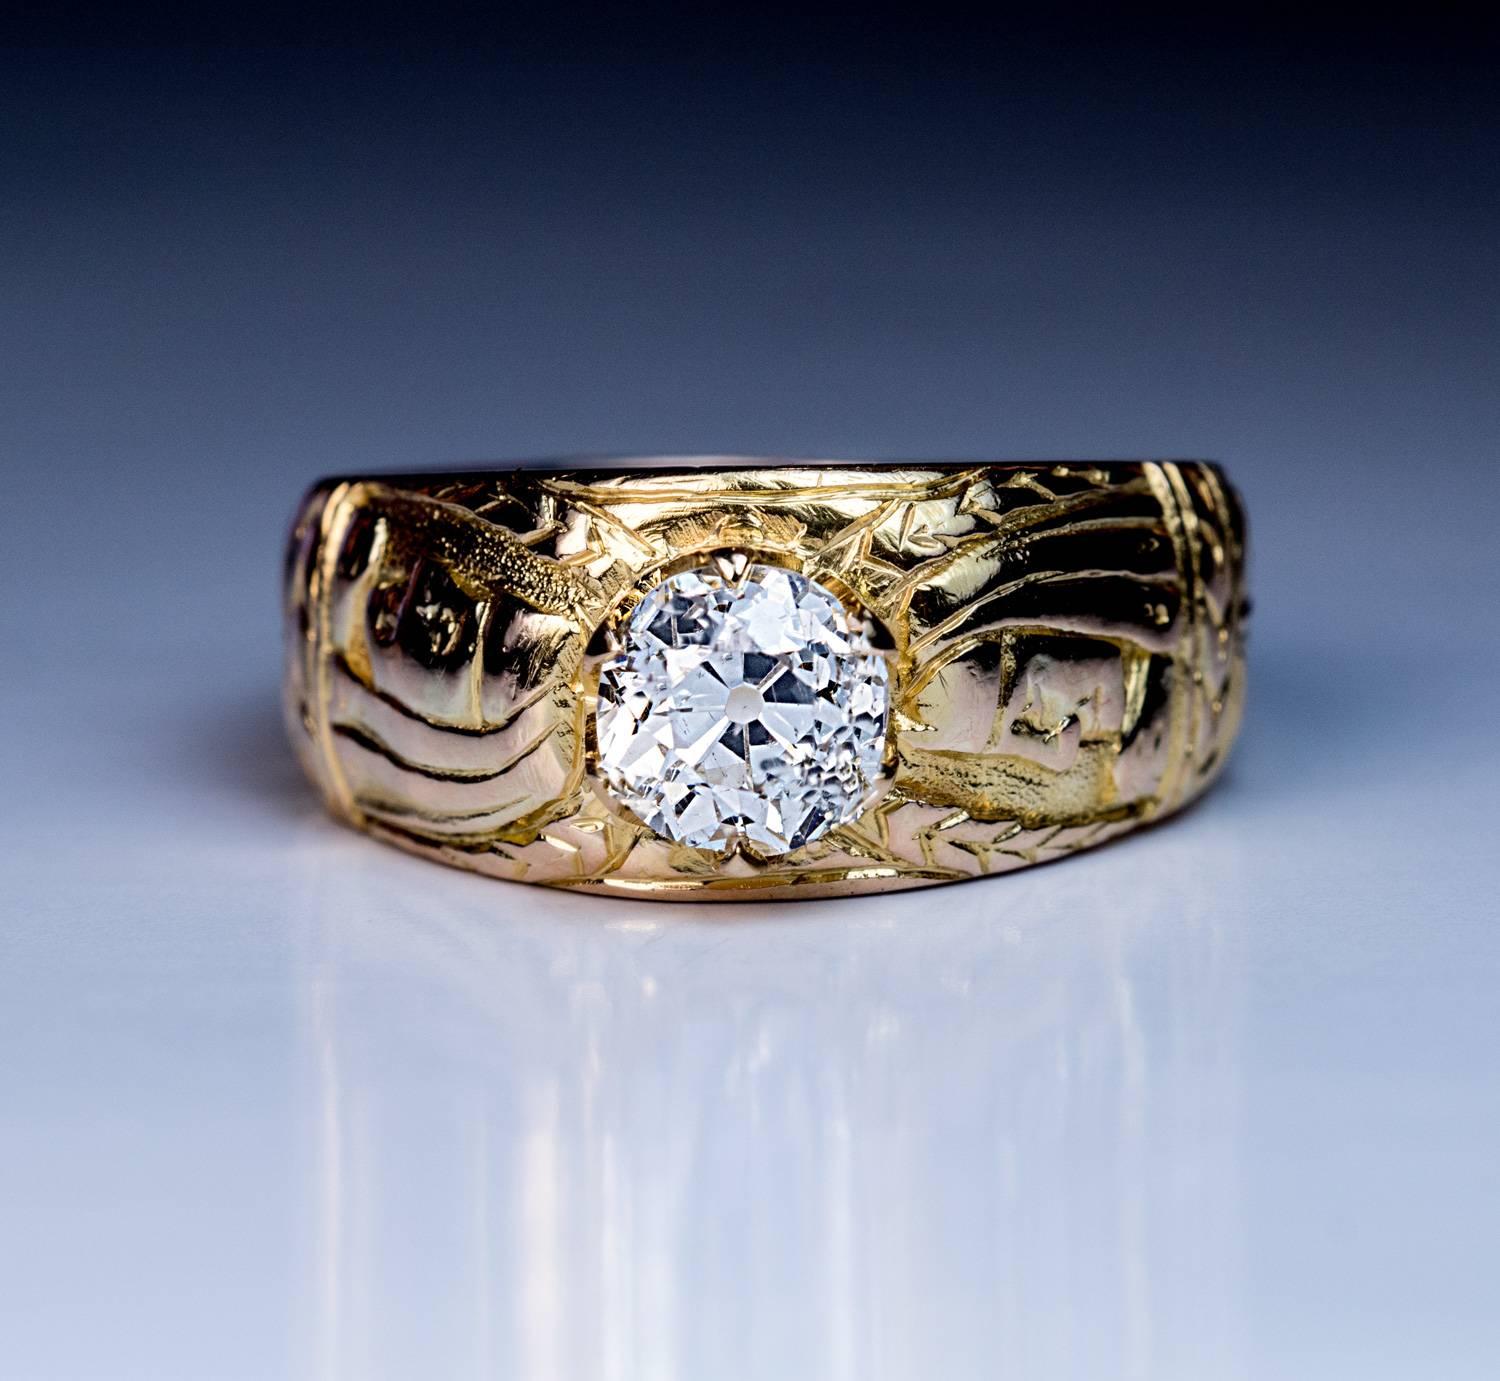 CIRCA 1890

Dieser sehr ungewöhnliche Ring aus antikem 14-karätigem Gold ist mit zwei Profilbüsten eines ägyptischen Pharaos und stilisierten Blumenmustern ziseliert.

Der Ring ist mit einem funkelnden Diamanten im alten europäischen Schliff